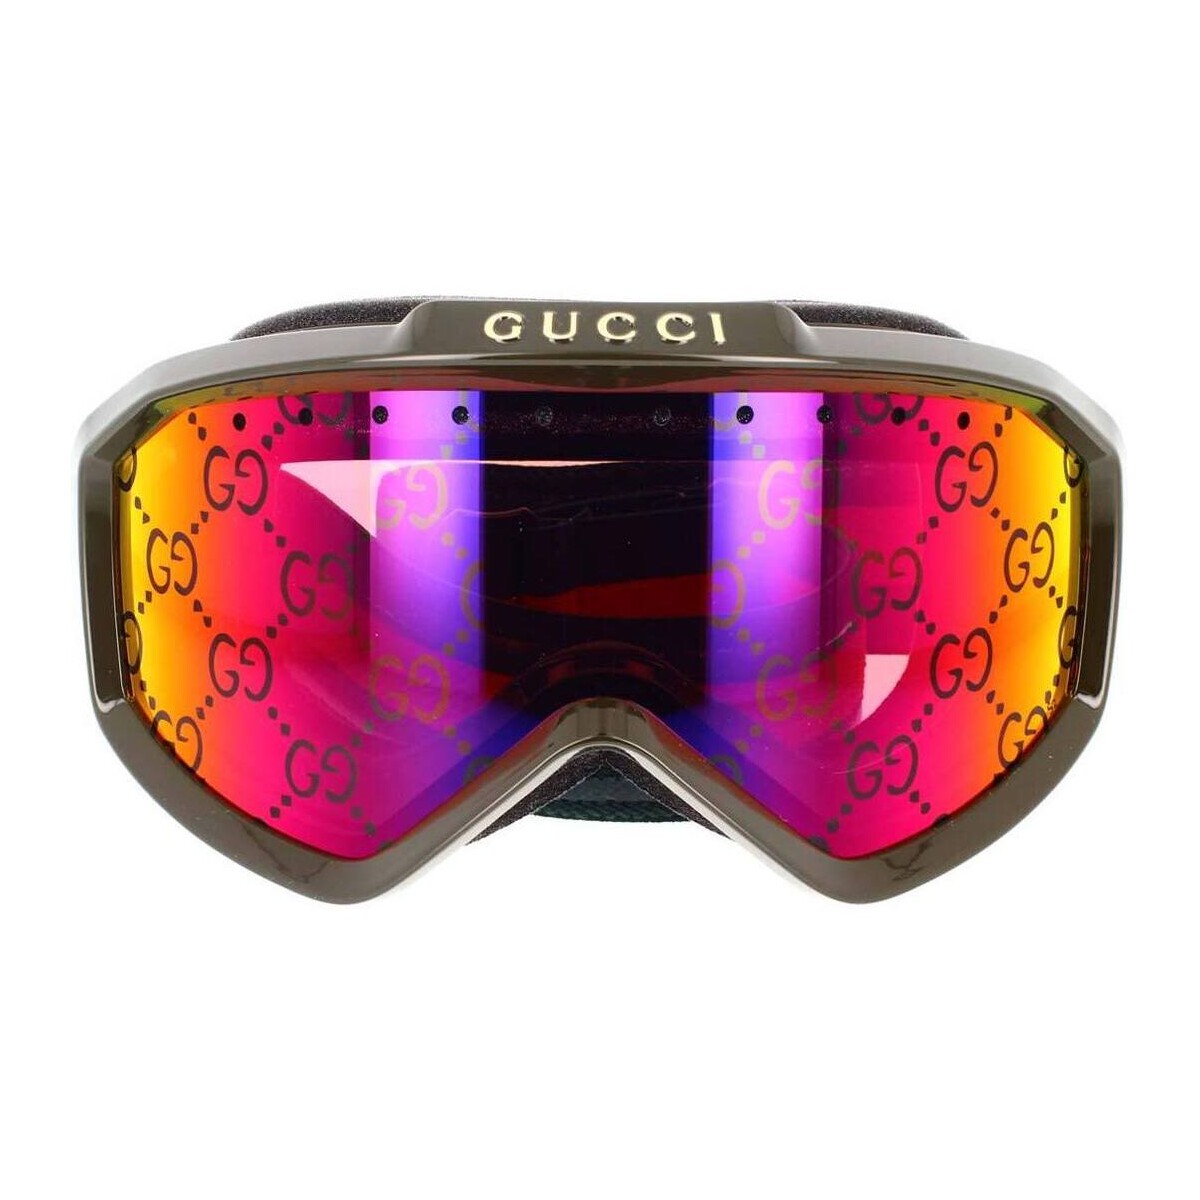 Modni dodaci Sportski dodaci Gucci Occhiali da Sole  Maschera da Sci e Snowboard GG1210S 003 Zelena